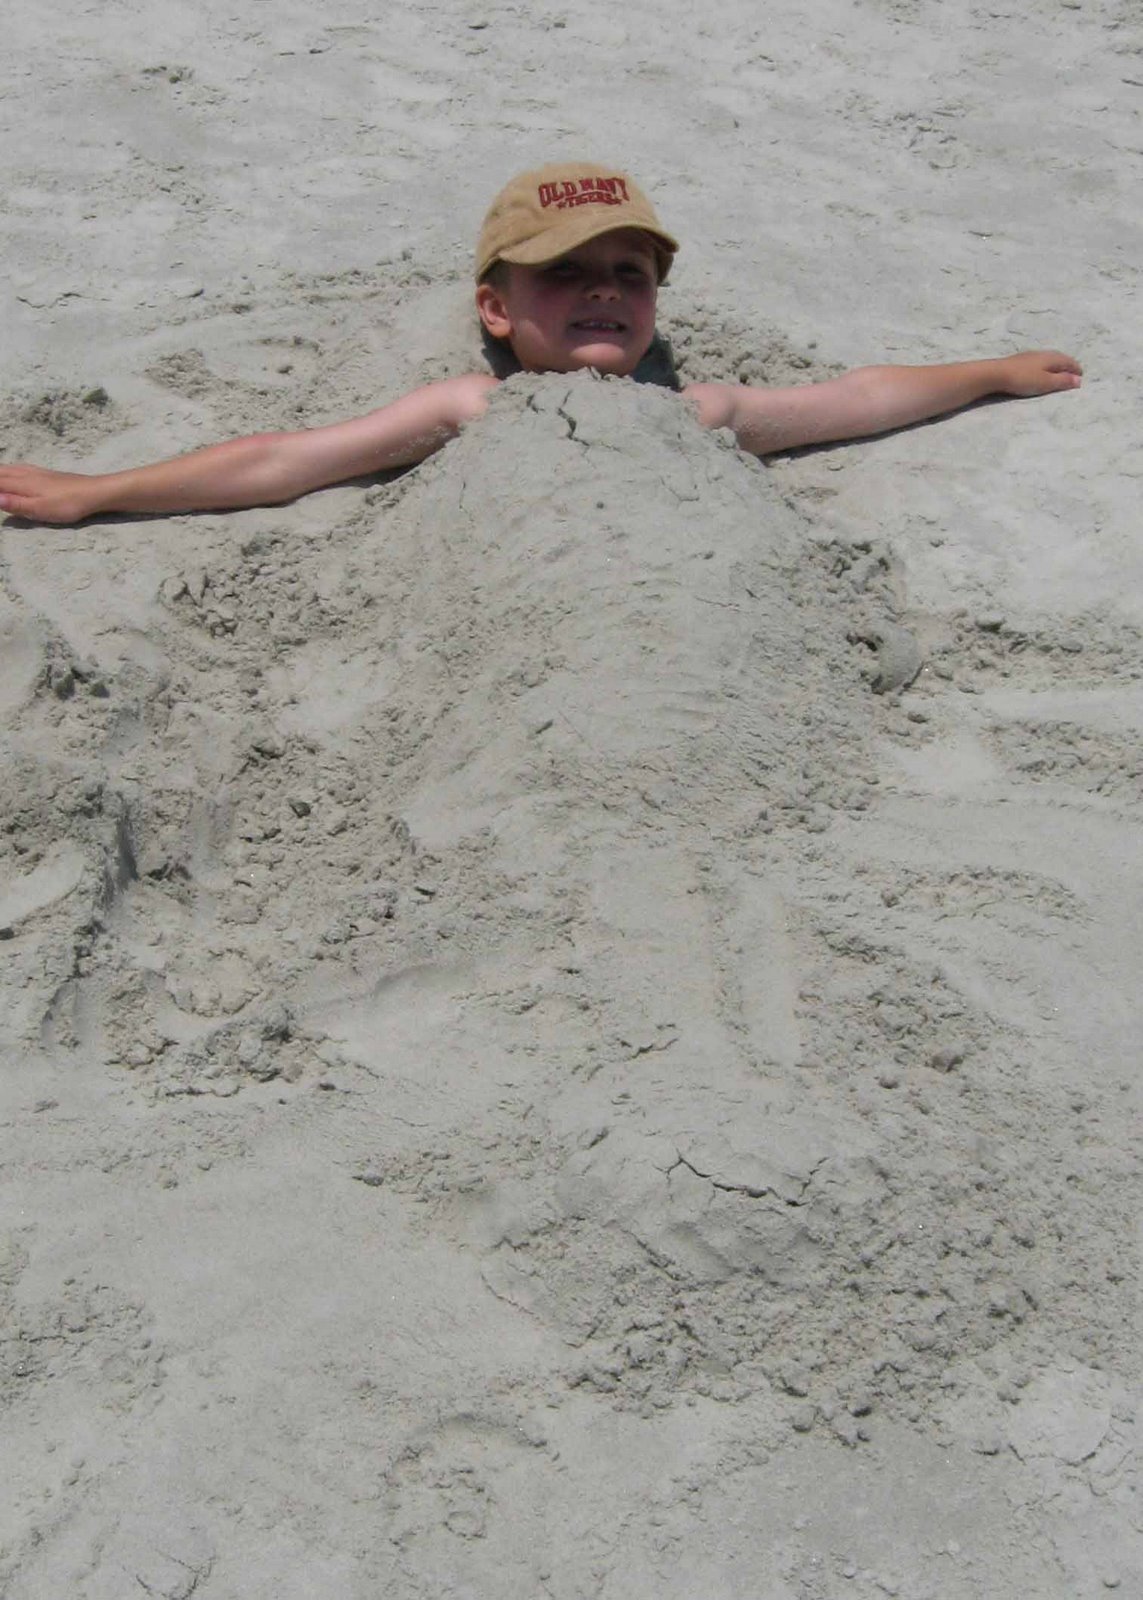 [Zach+buried+in+sand+194+psd.jpg]